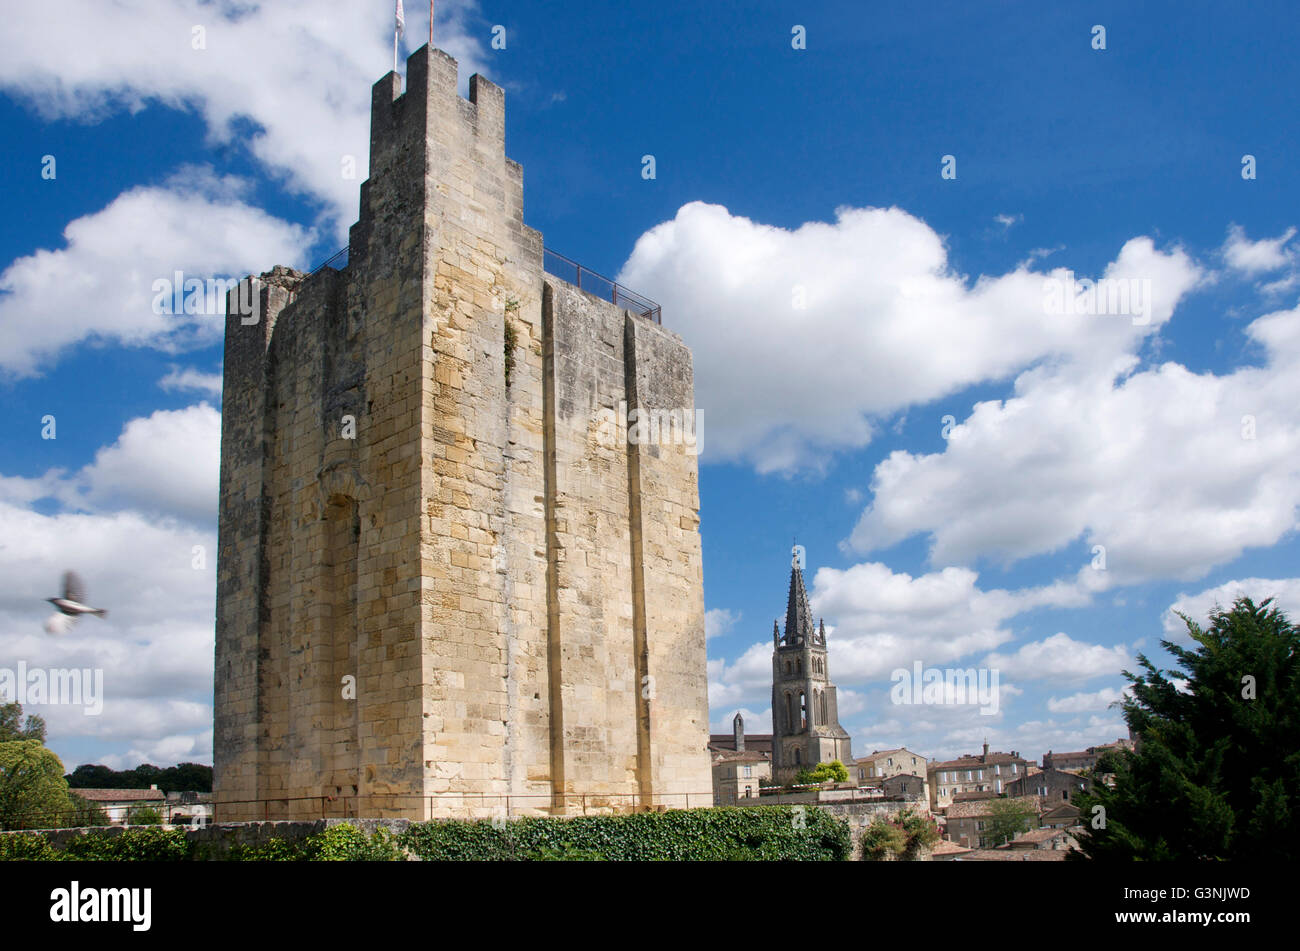 Chateau du Roi, King's Castle, tower, donjon, Saint-Émilion, Gironde Bordeaux, France, Europe Stock Photo